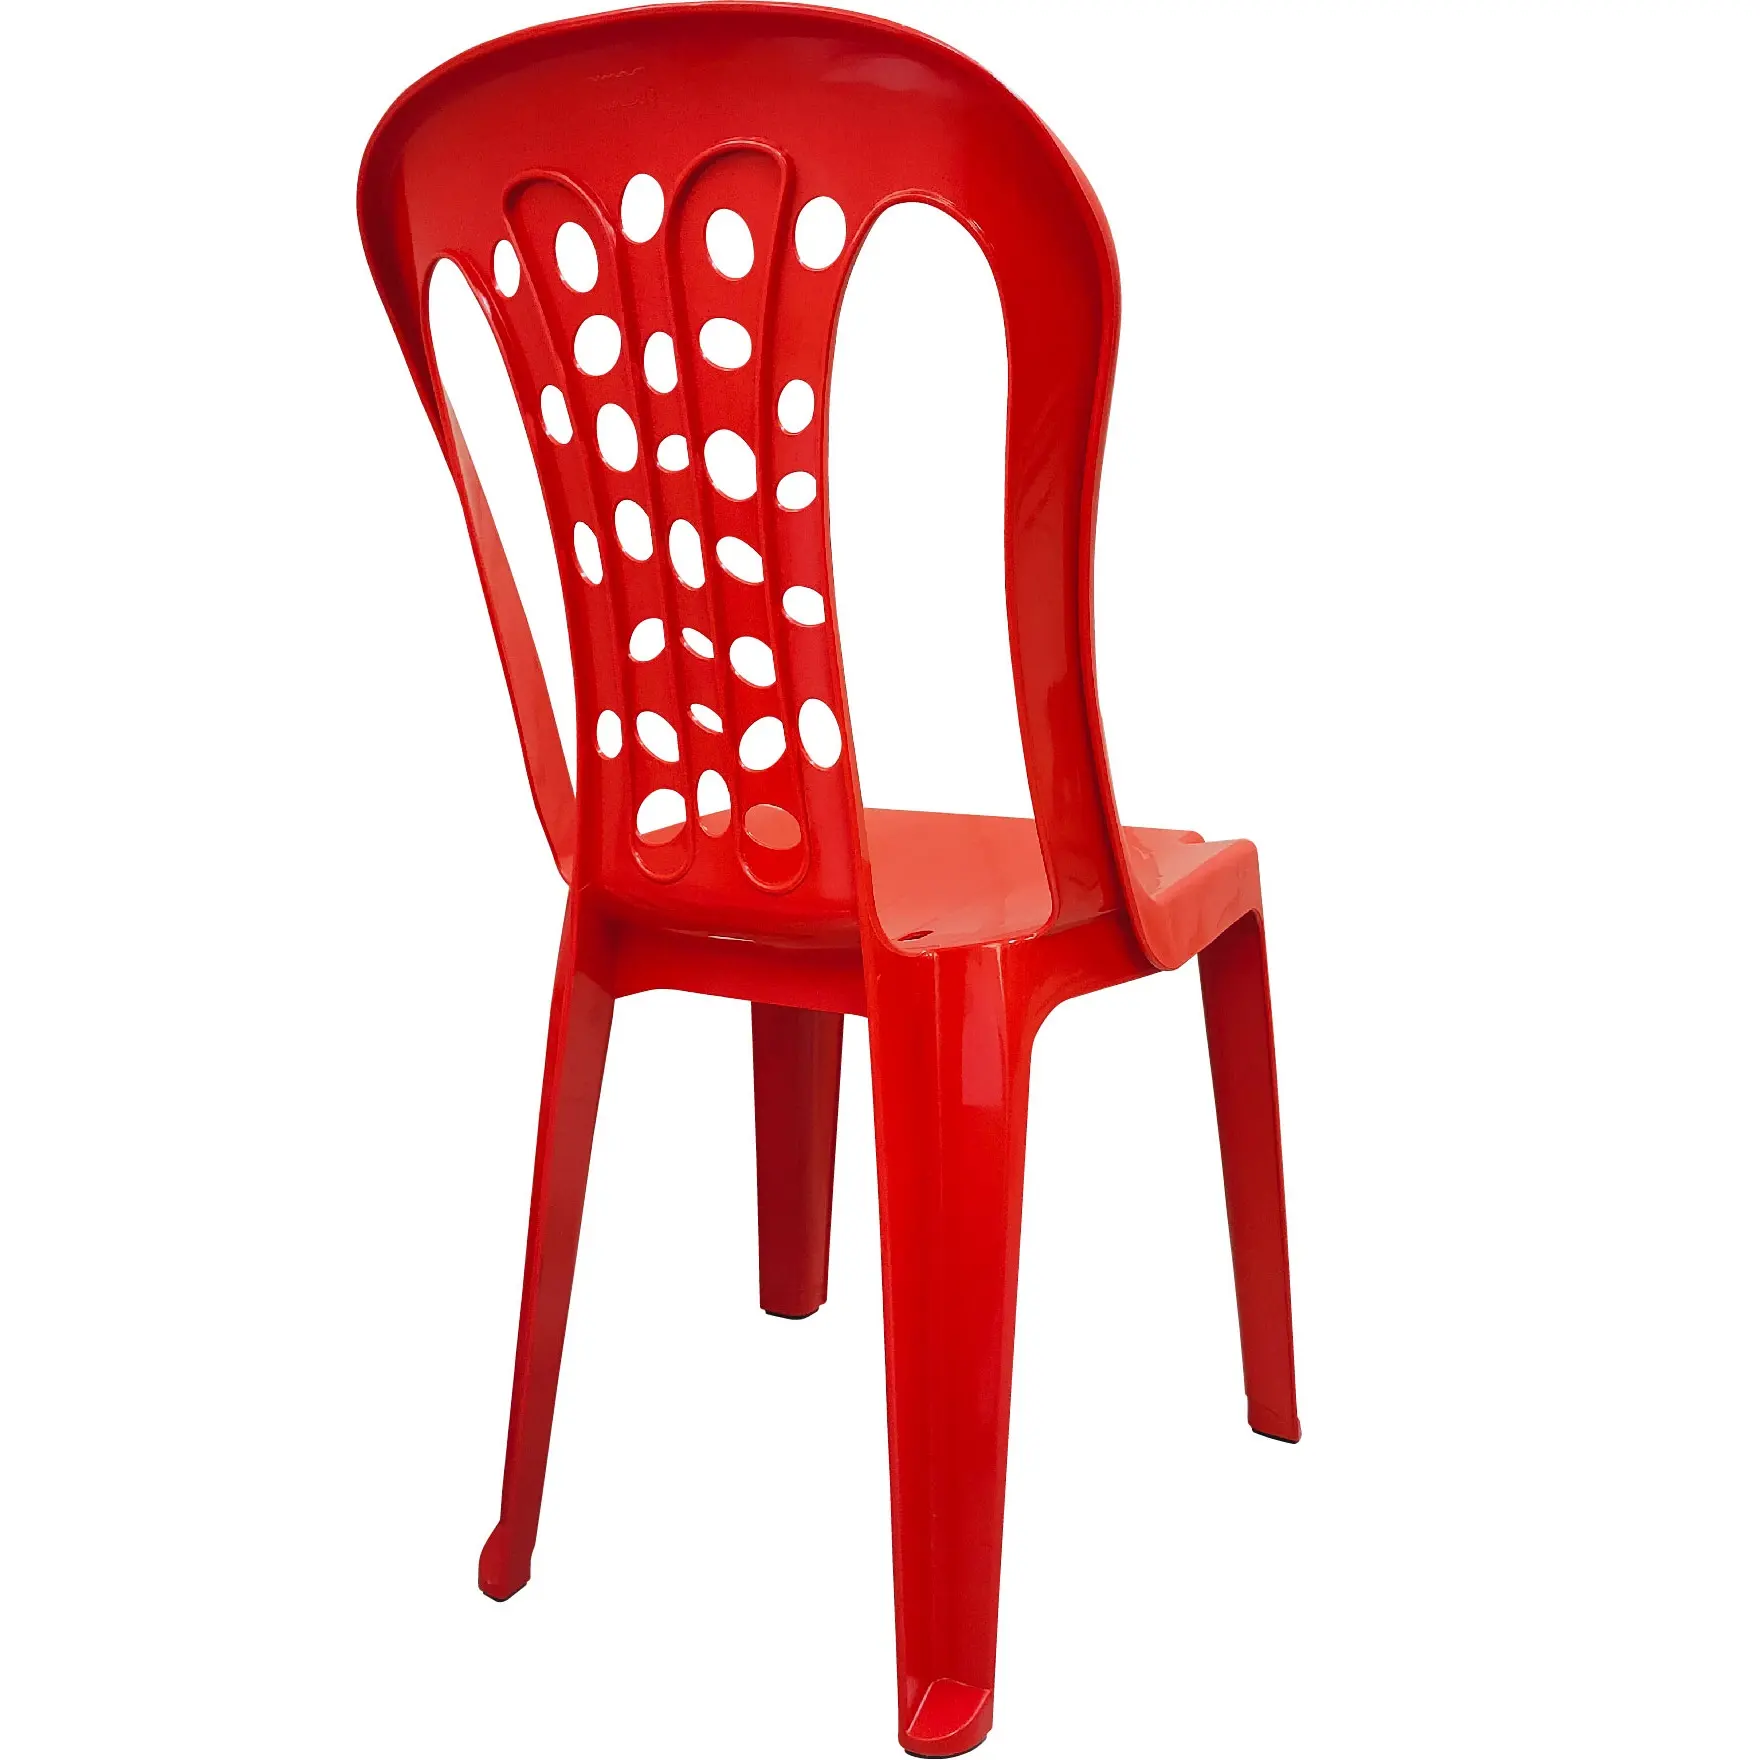 Chaise empilable en plastique robuste avec Base en caoutchouc, offre spéciale, livraison gratuite